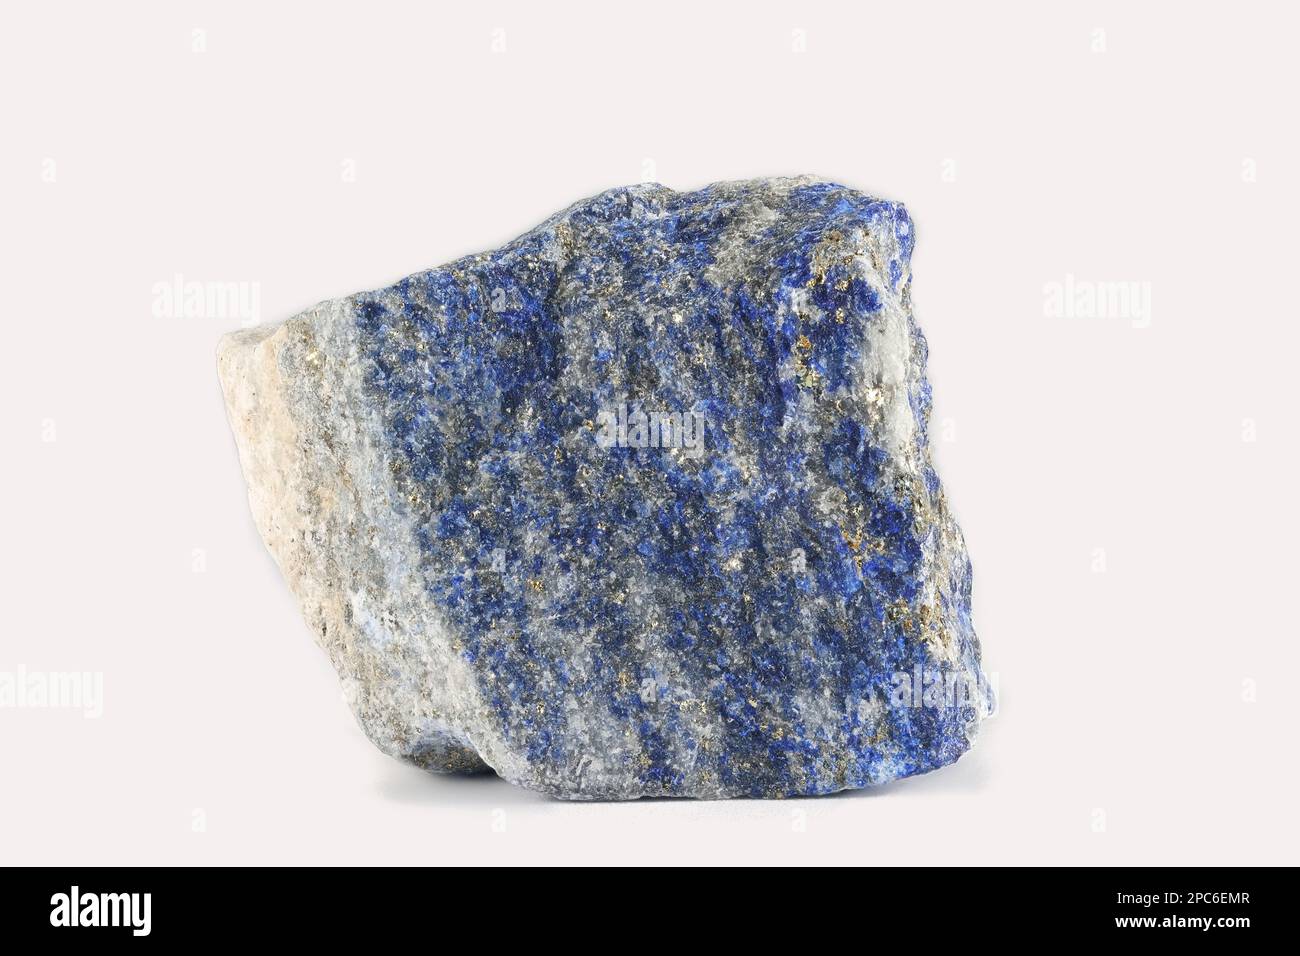 Le lapis lazuli, ou lapis pour le moins, est une roche métamorphique bleu foncé utilisée comme pierre semi-précieuse Banque D'Images